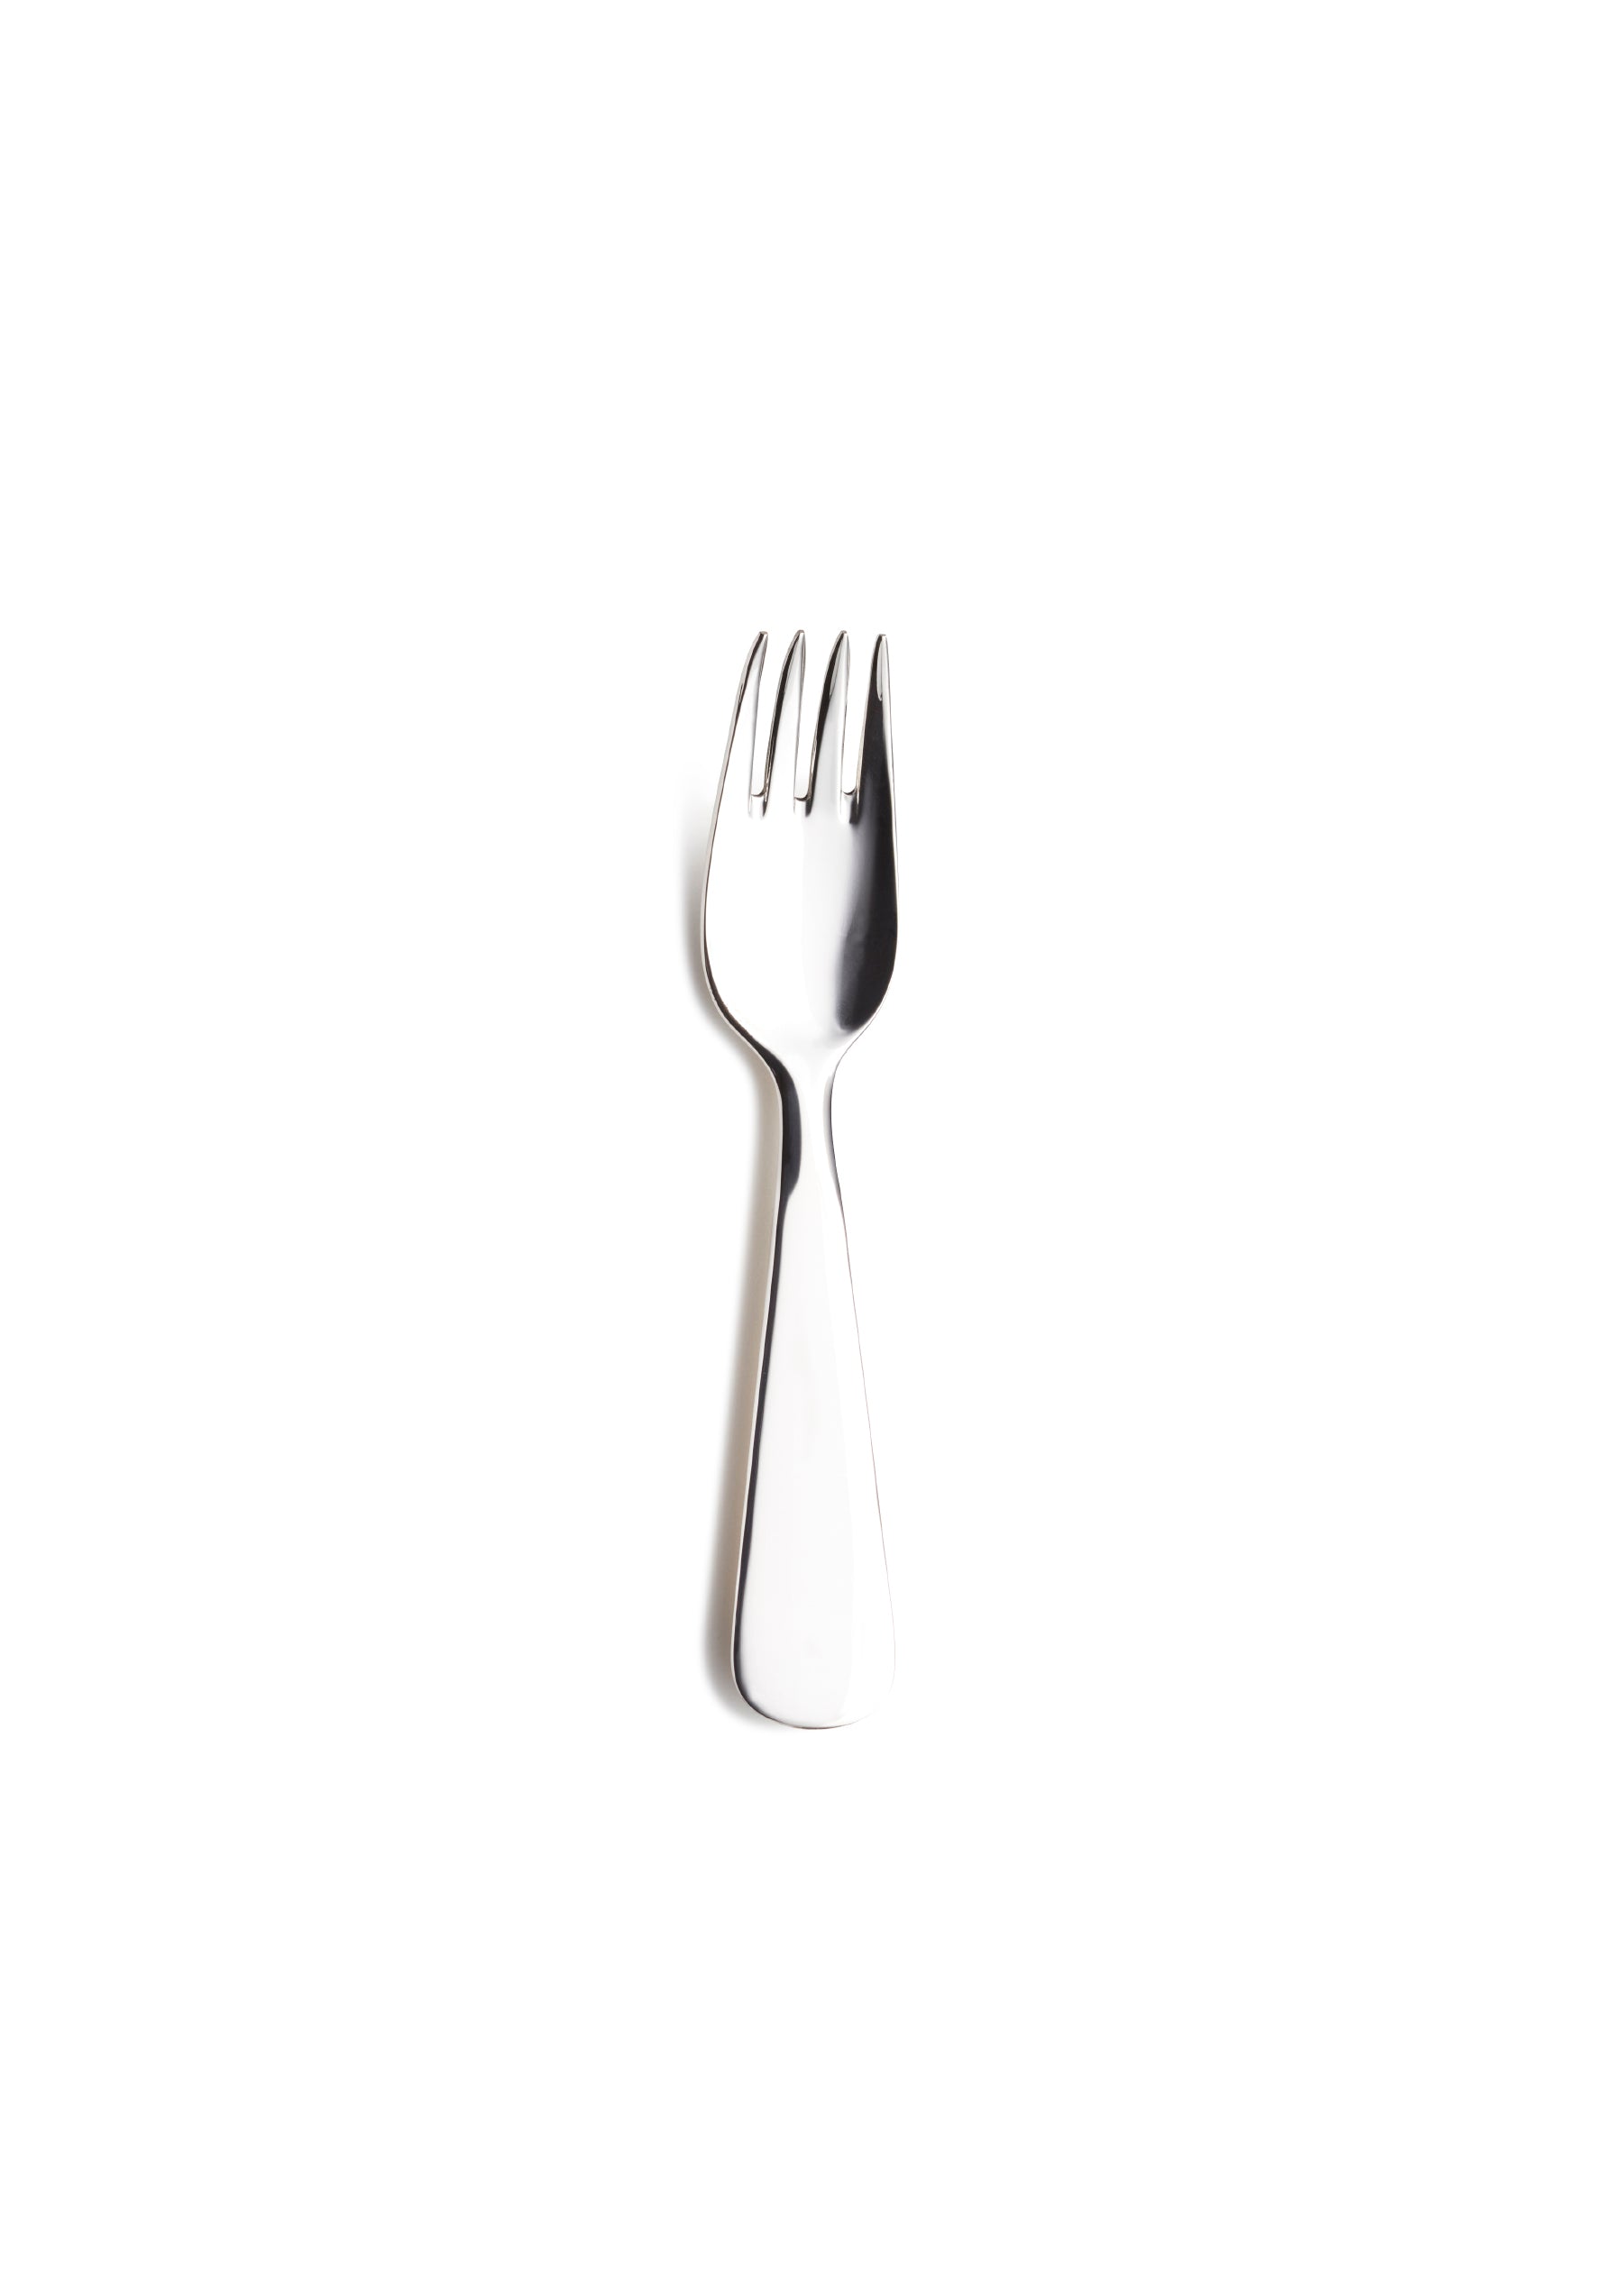 Chubby children's fork